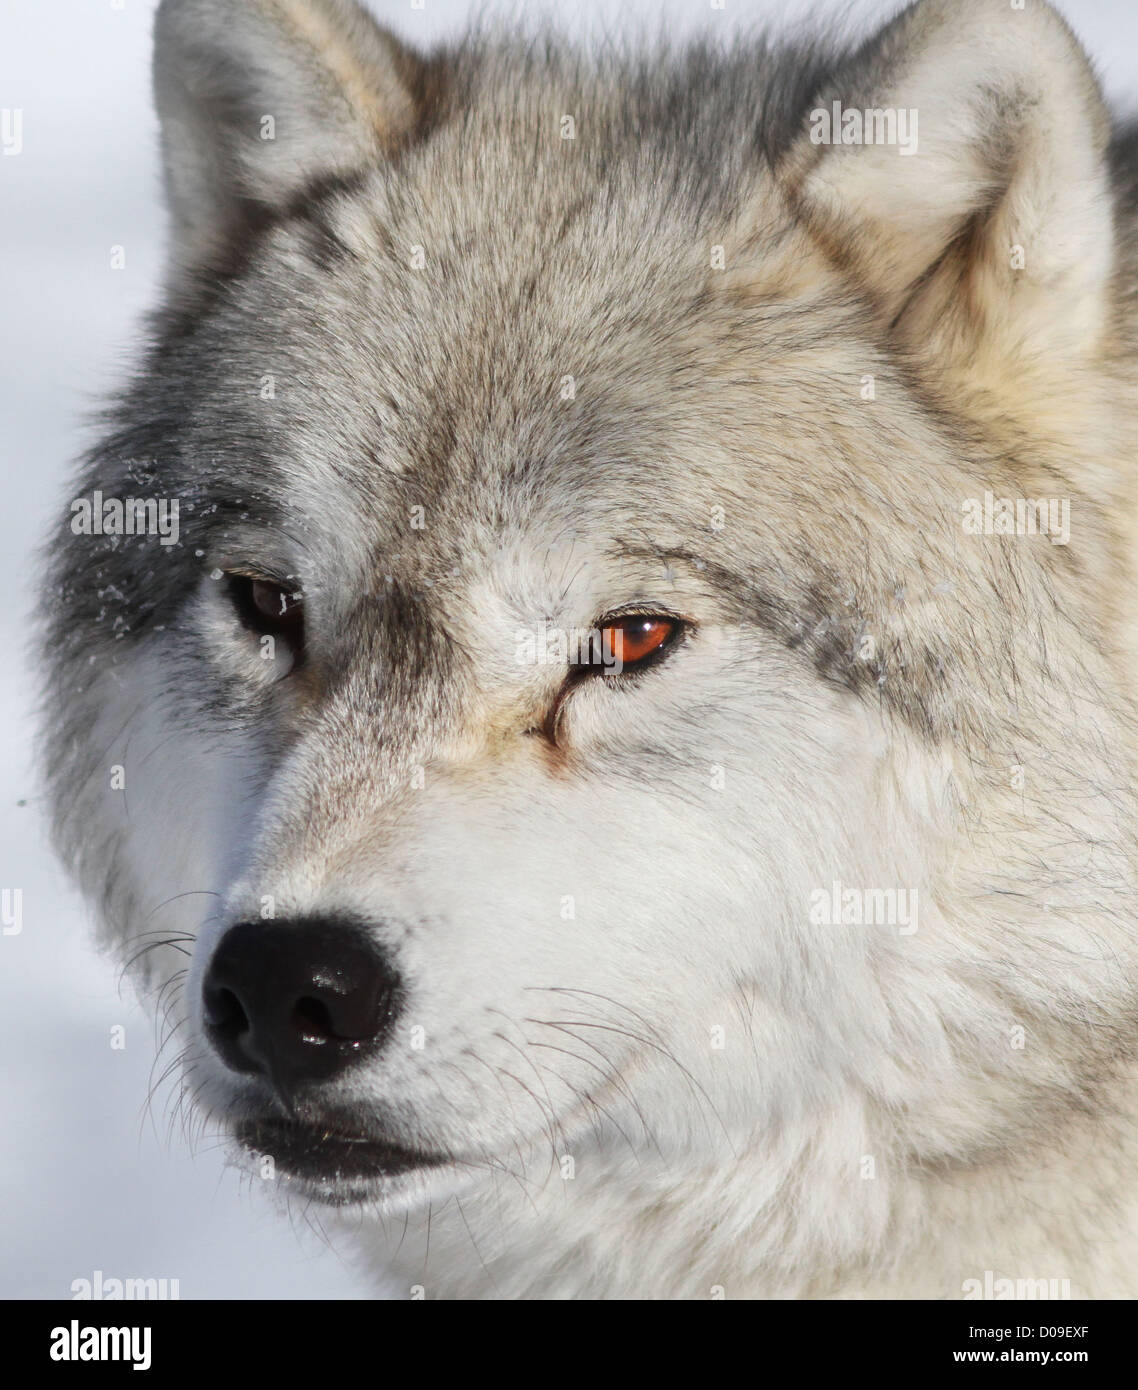 Macho alfa retrato de lobo ártico en invierno Foto de stock